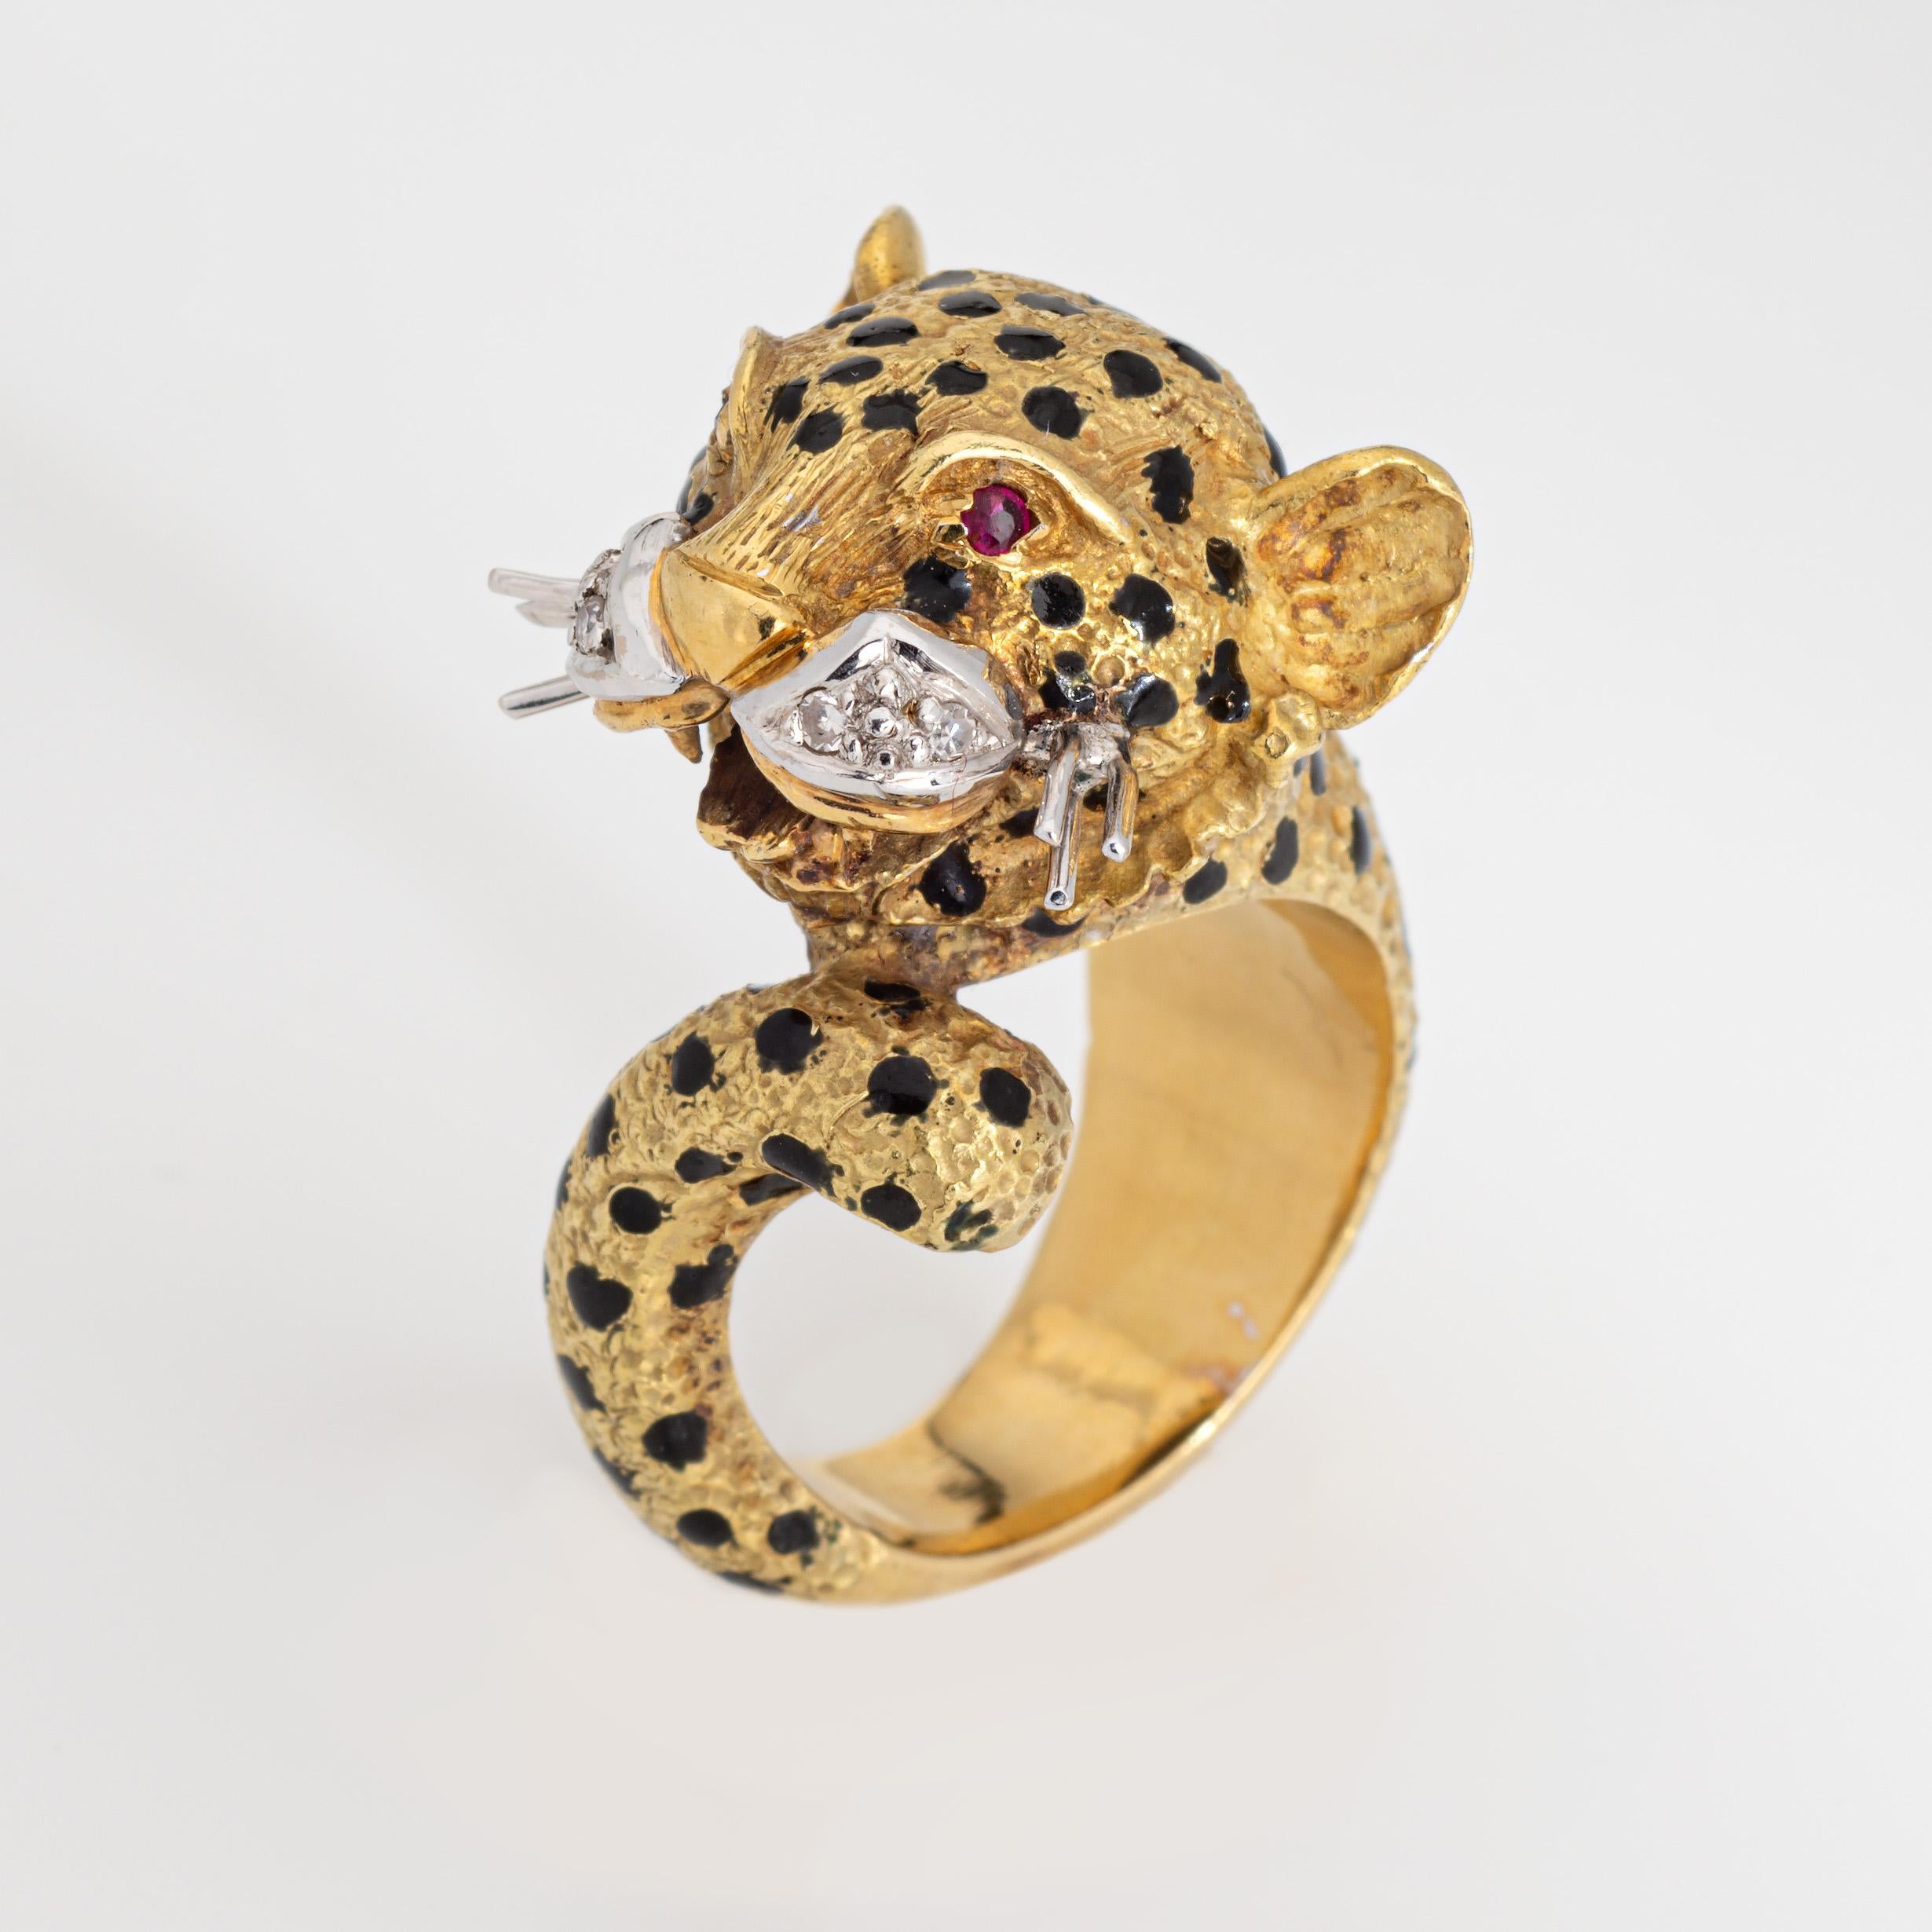 Anillo vintage de leopardo finamente detallado, elaborado en oro amarillo de 18 quilates (circa años 60-70).  

4 diamantes suman un total estimado de 0,02 quilates (color estimado H-I y claridad SI2-I1). Dos rubíes tallados de 0,01 quilates